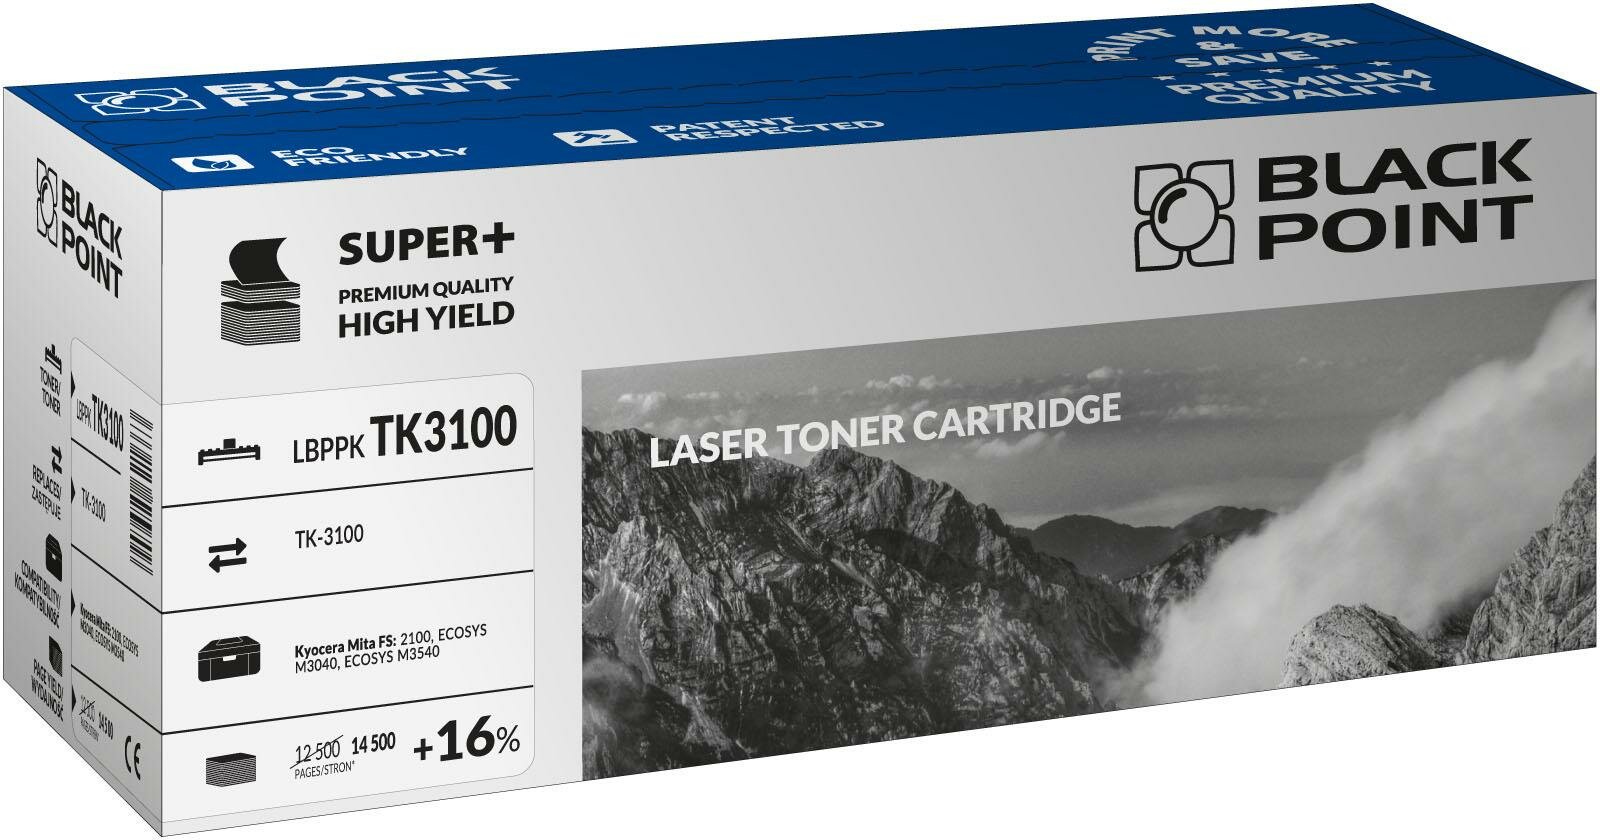 Toner laserowy Black Point Super Plus LBPPKTK3100 widok pod kątem na opakowanie